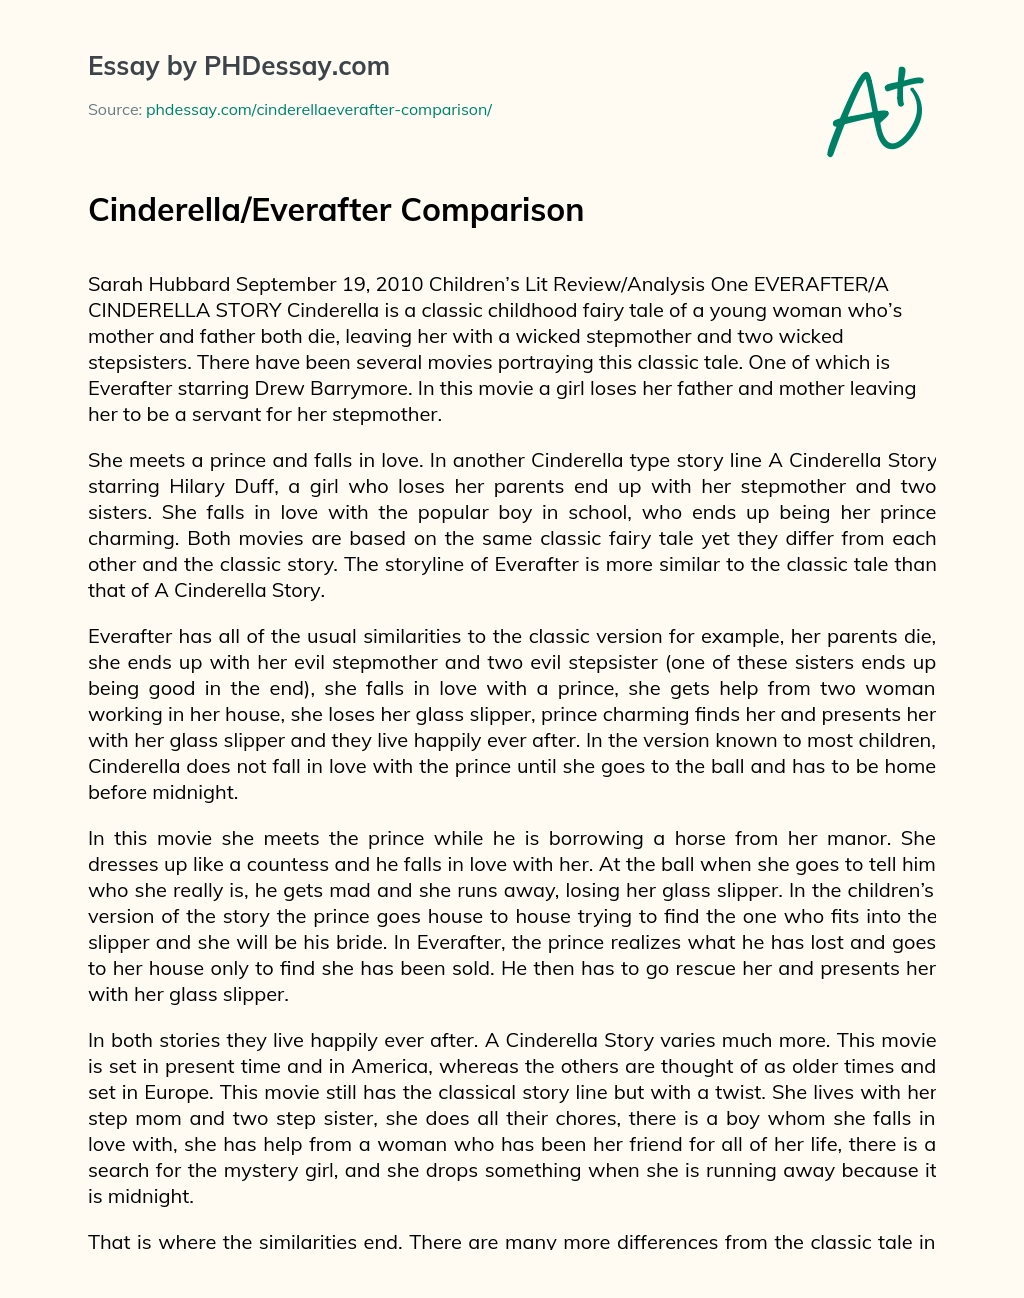 Cinderella/Everafter Comparison essay